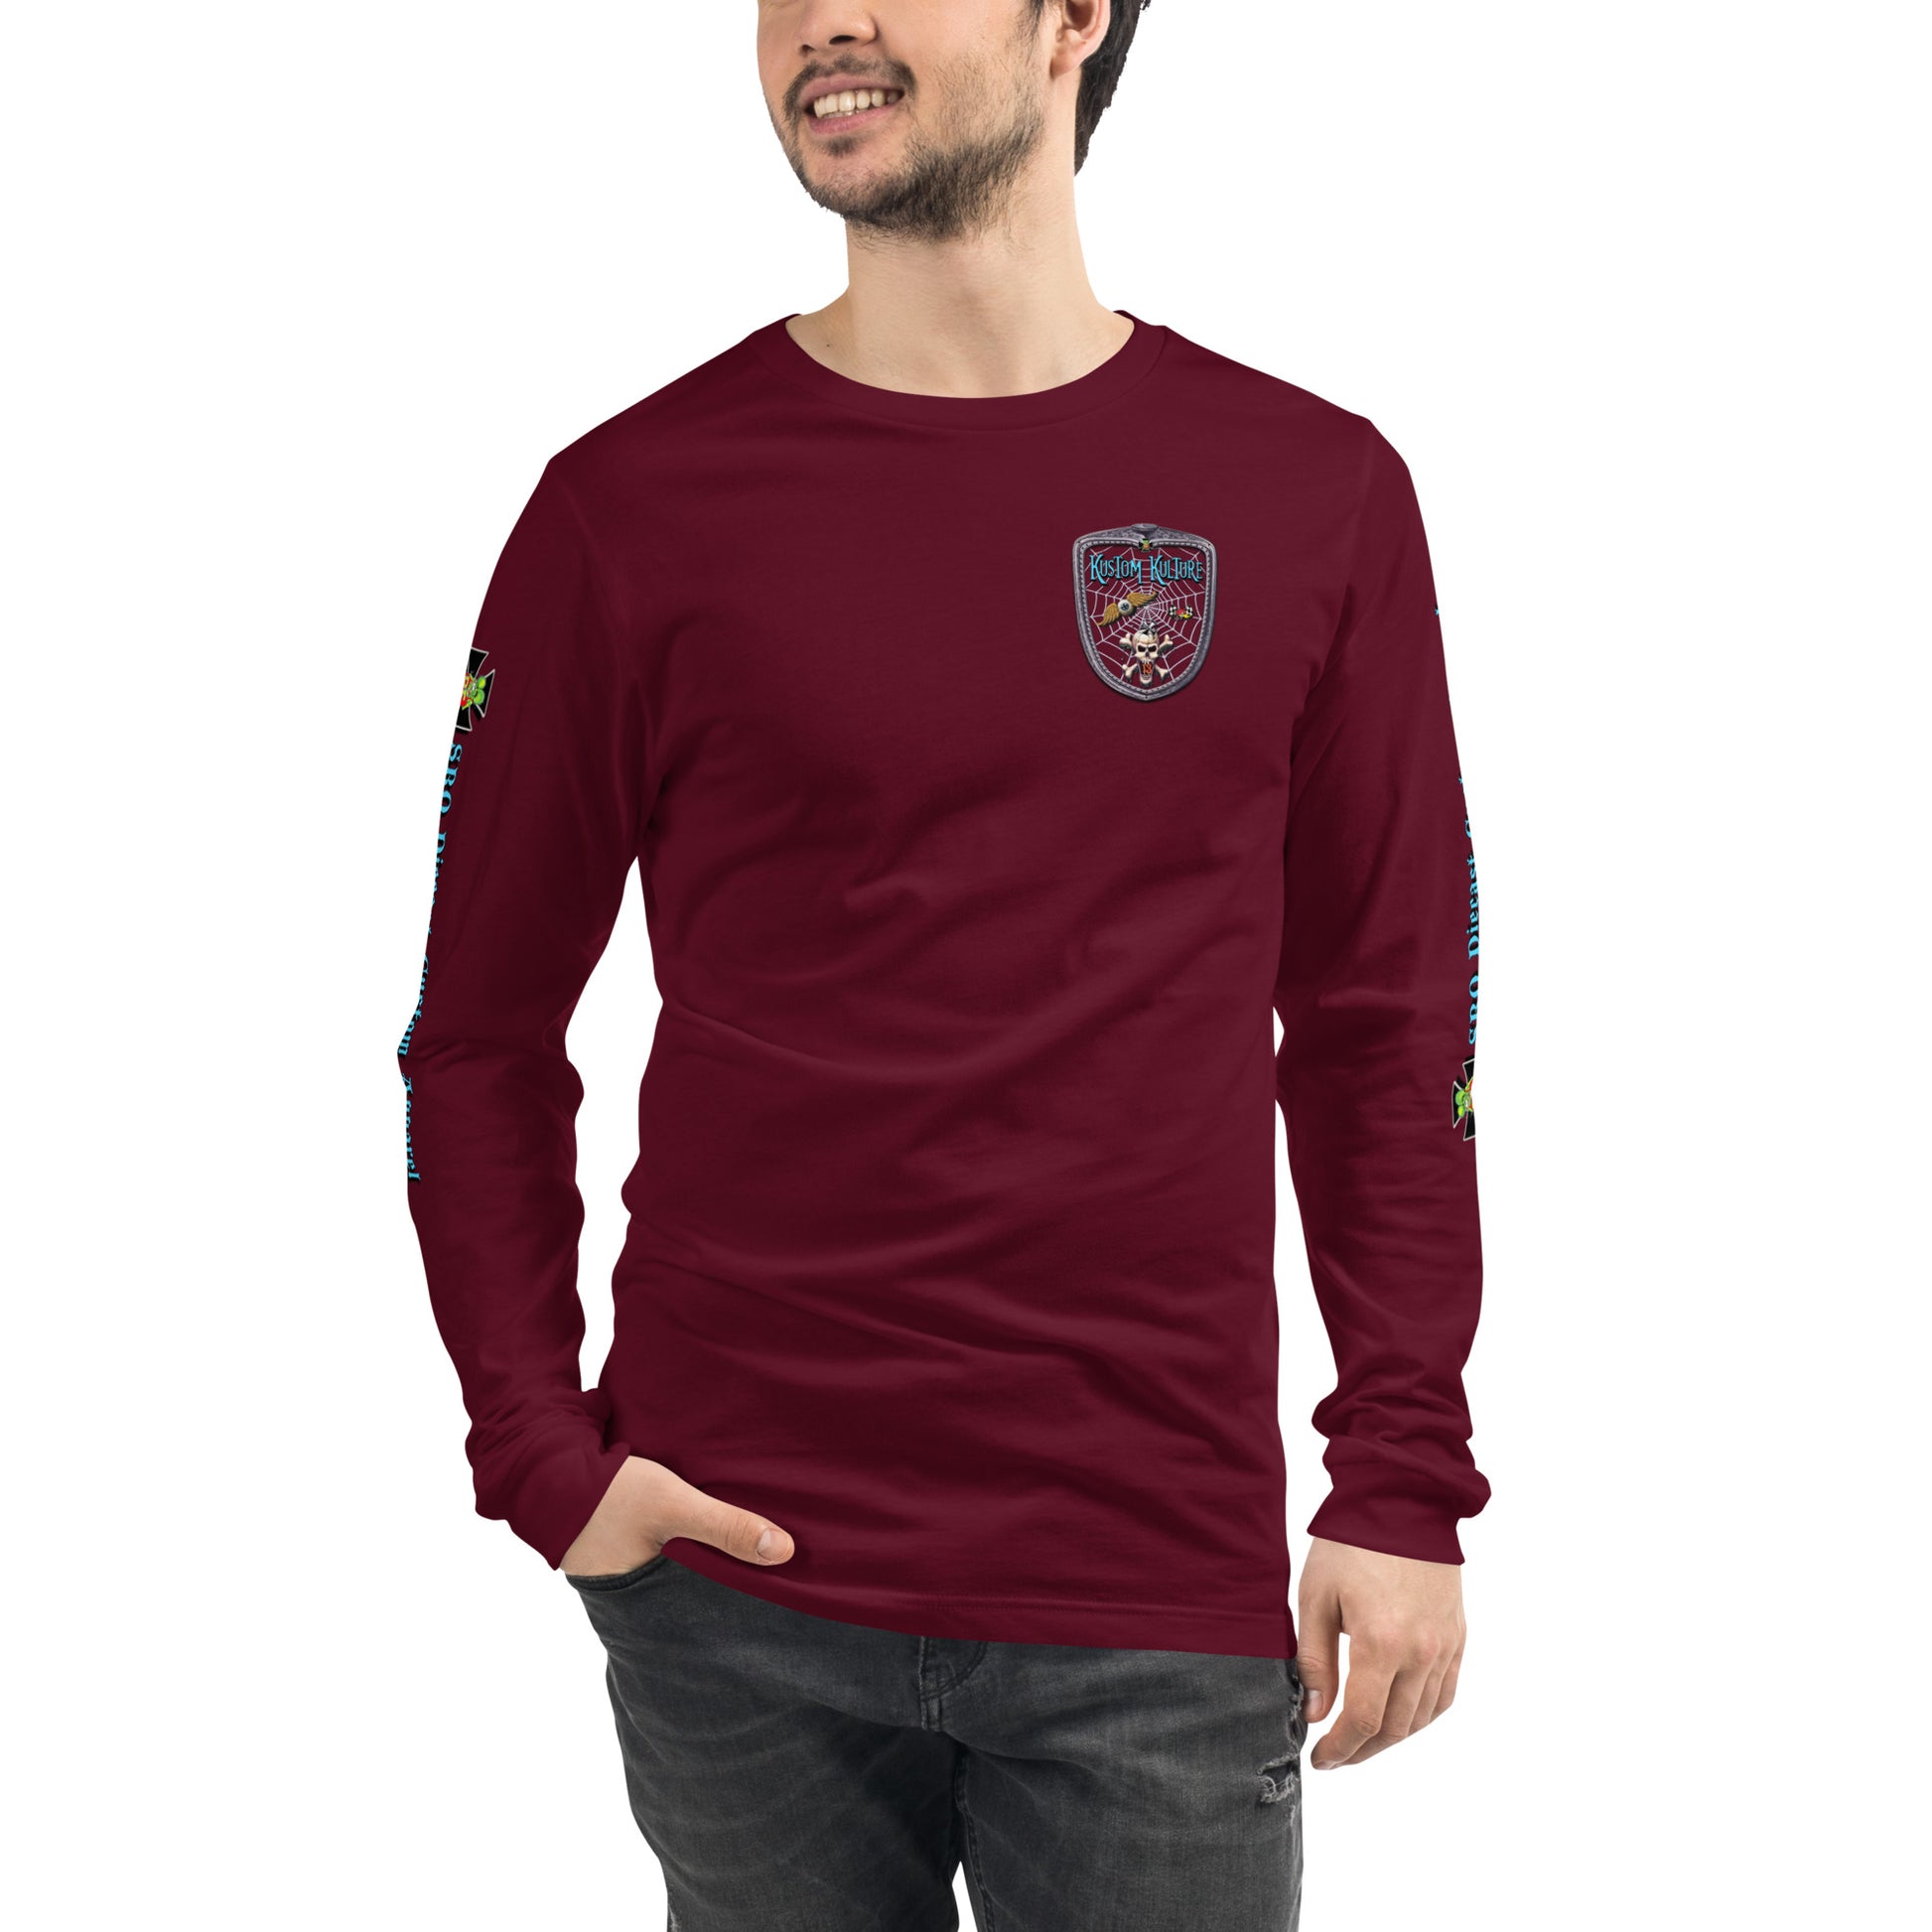 Soren Umlaut T-Shirt - Dusty Rose - Soren Custom Inc